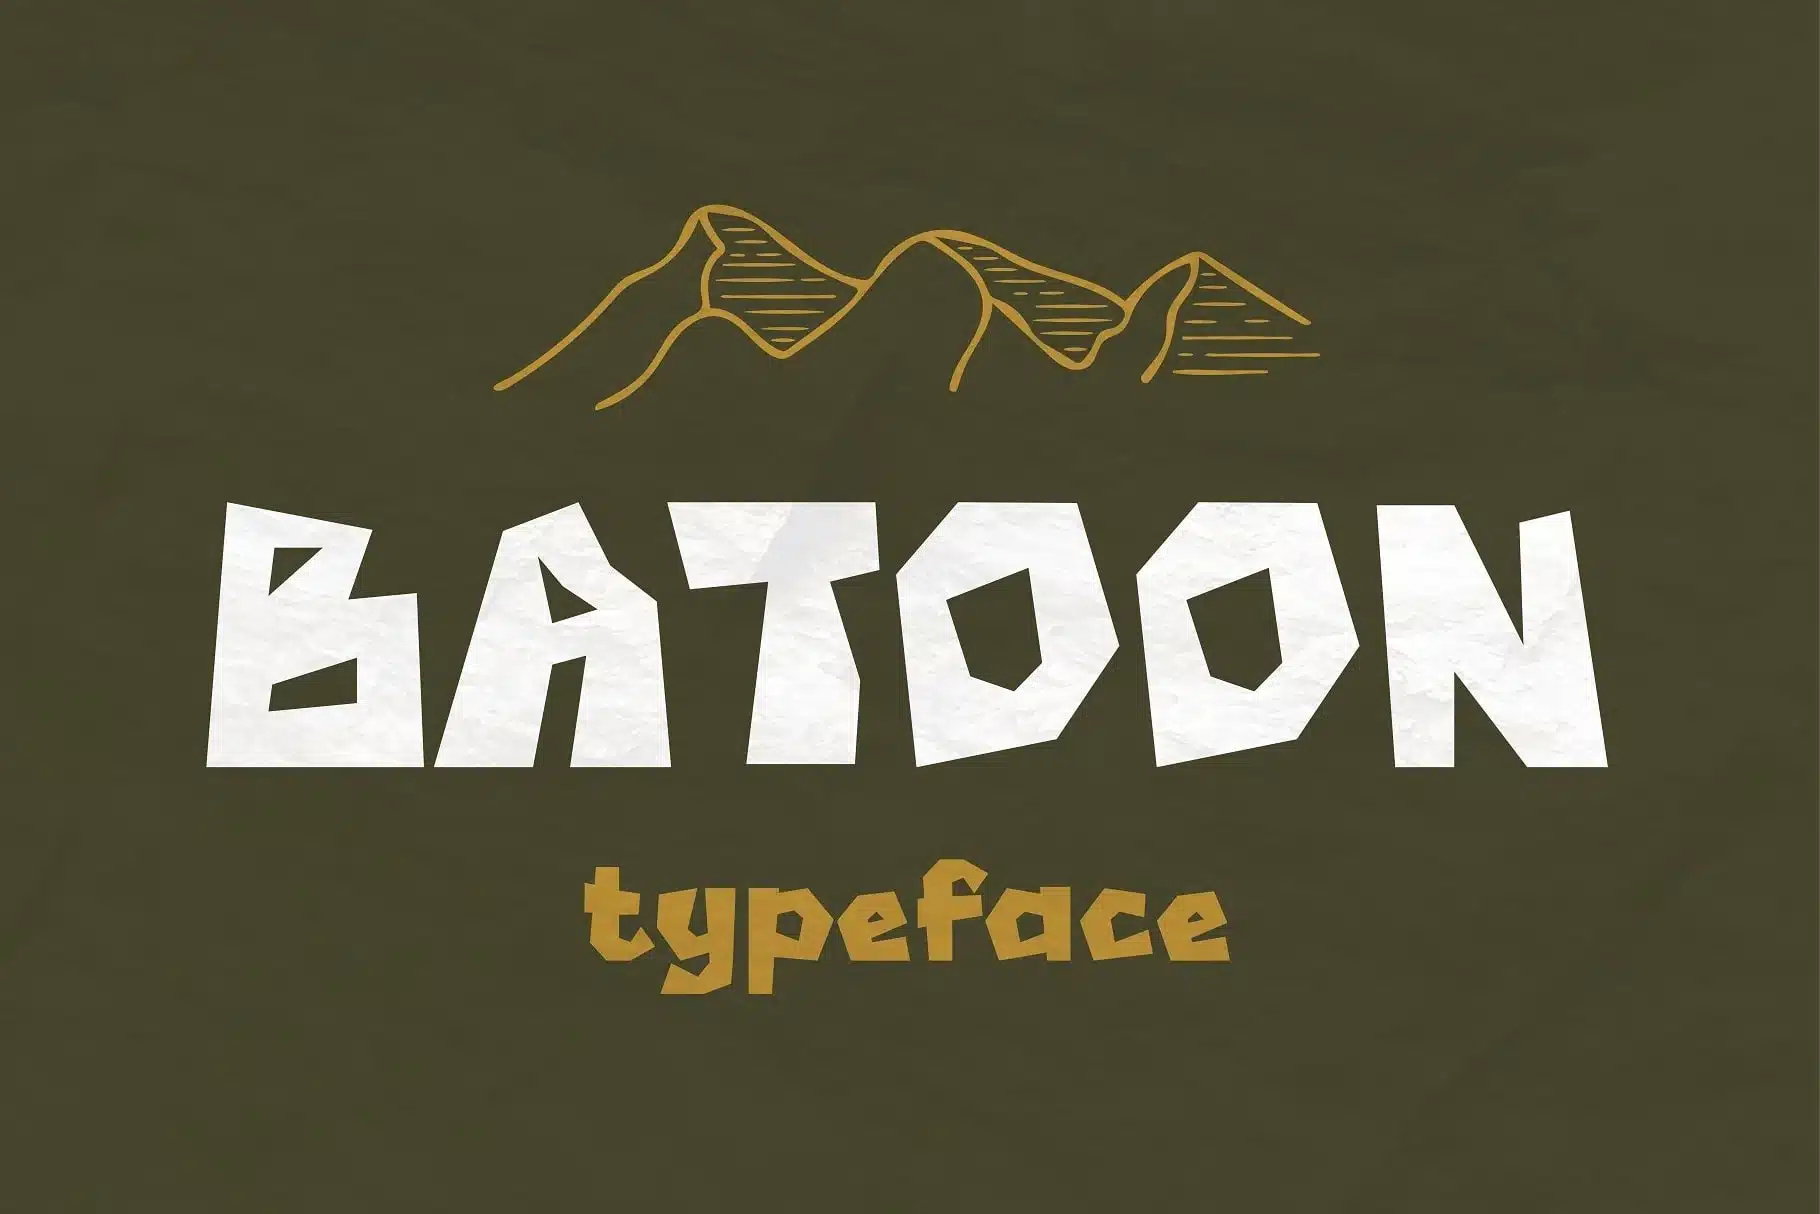 A Batoon Hunting Font